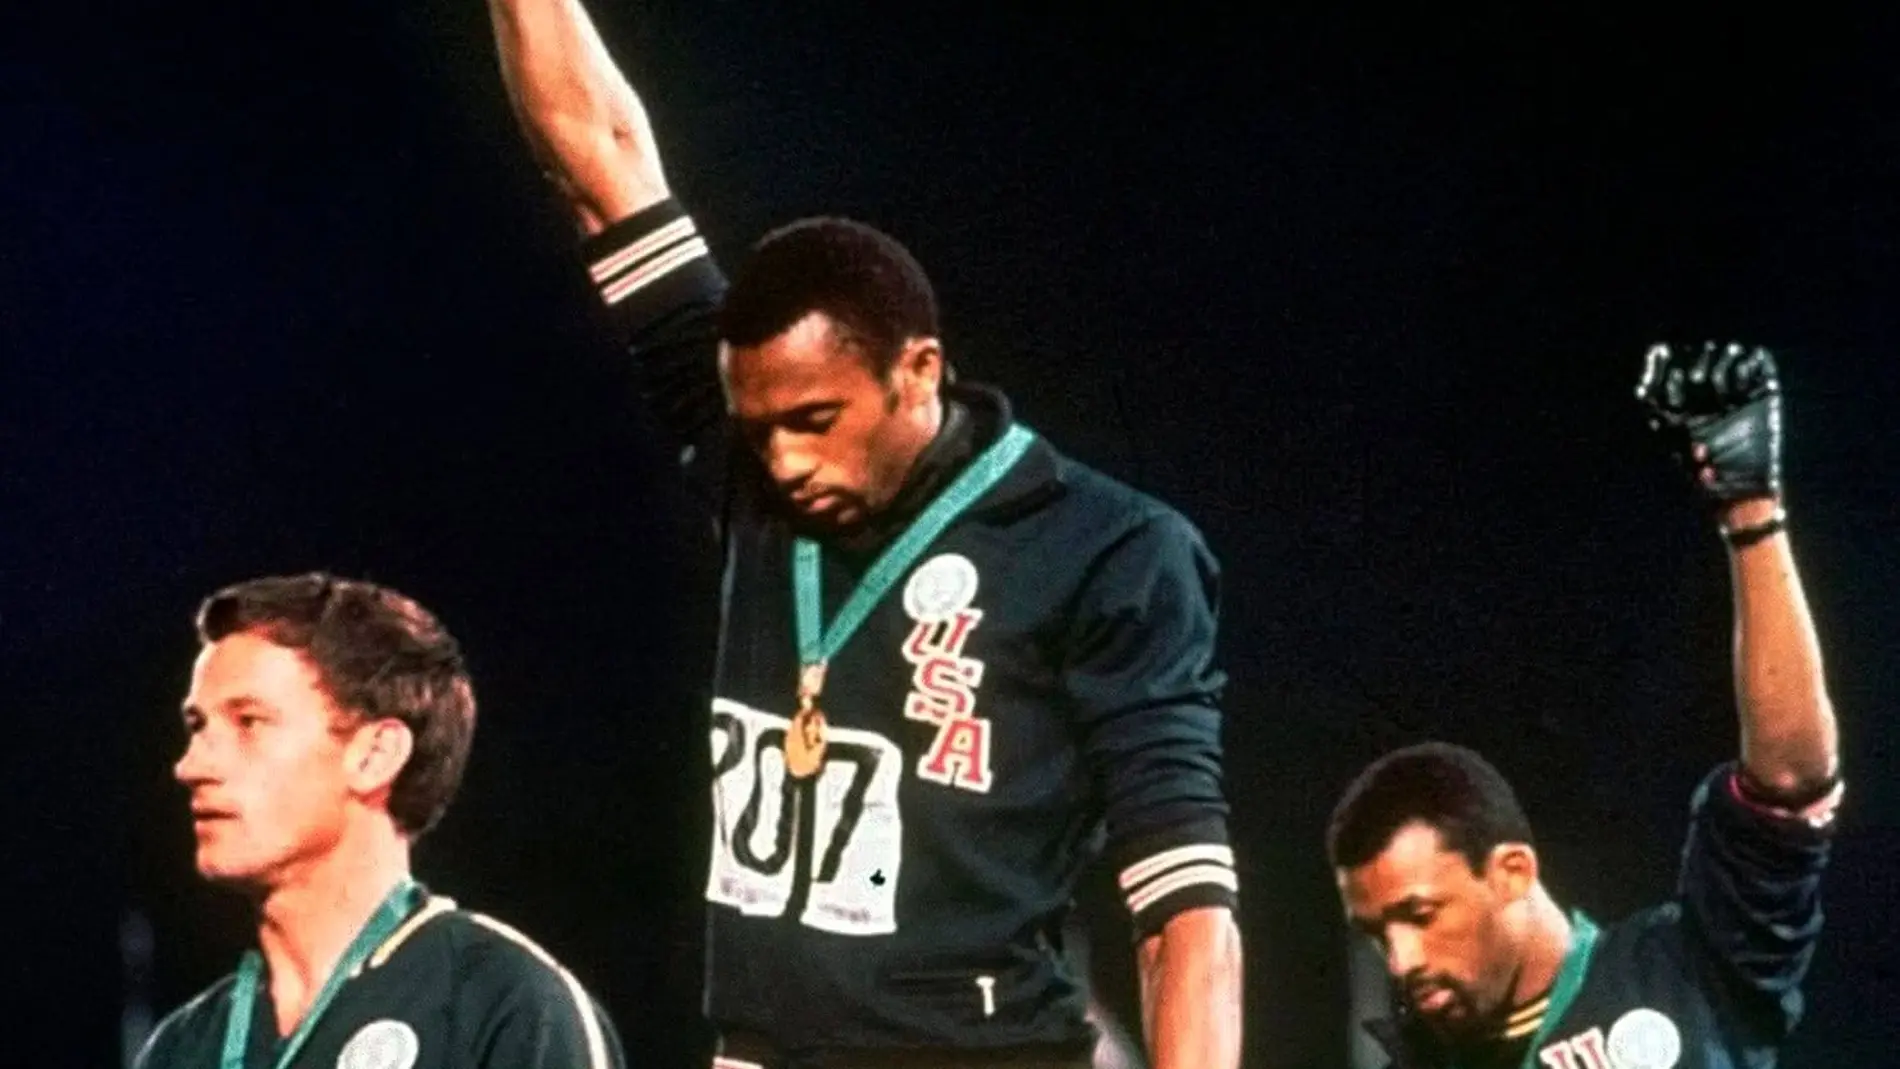 El podio del Black Power en México 68